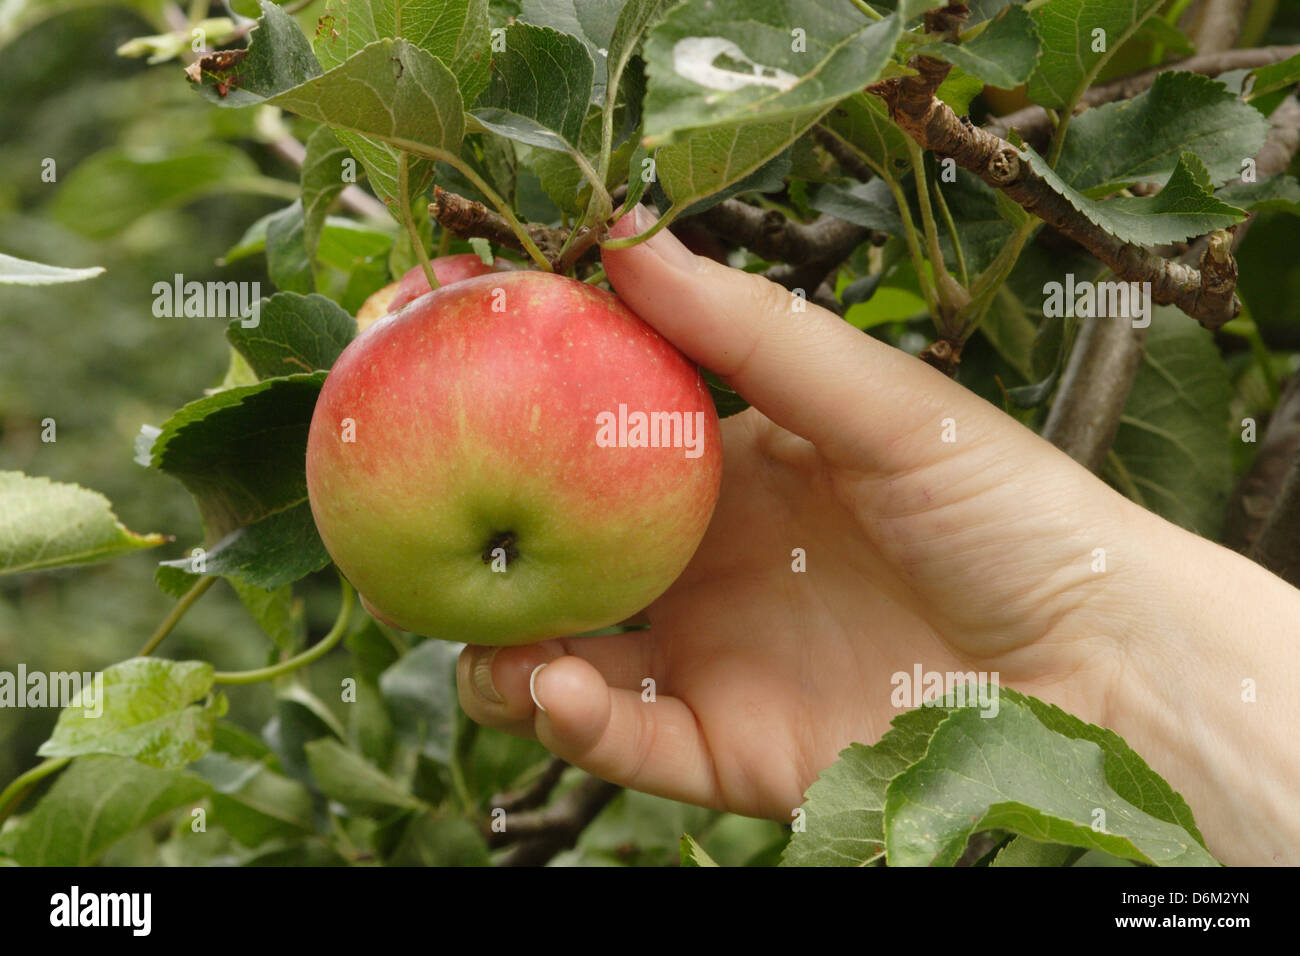 Ein Apfel reif Entdeckung ist von einem Baum gepflückt wird Stockfotografie  - Alamy